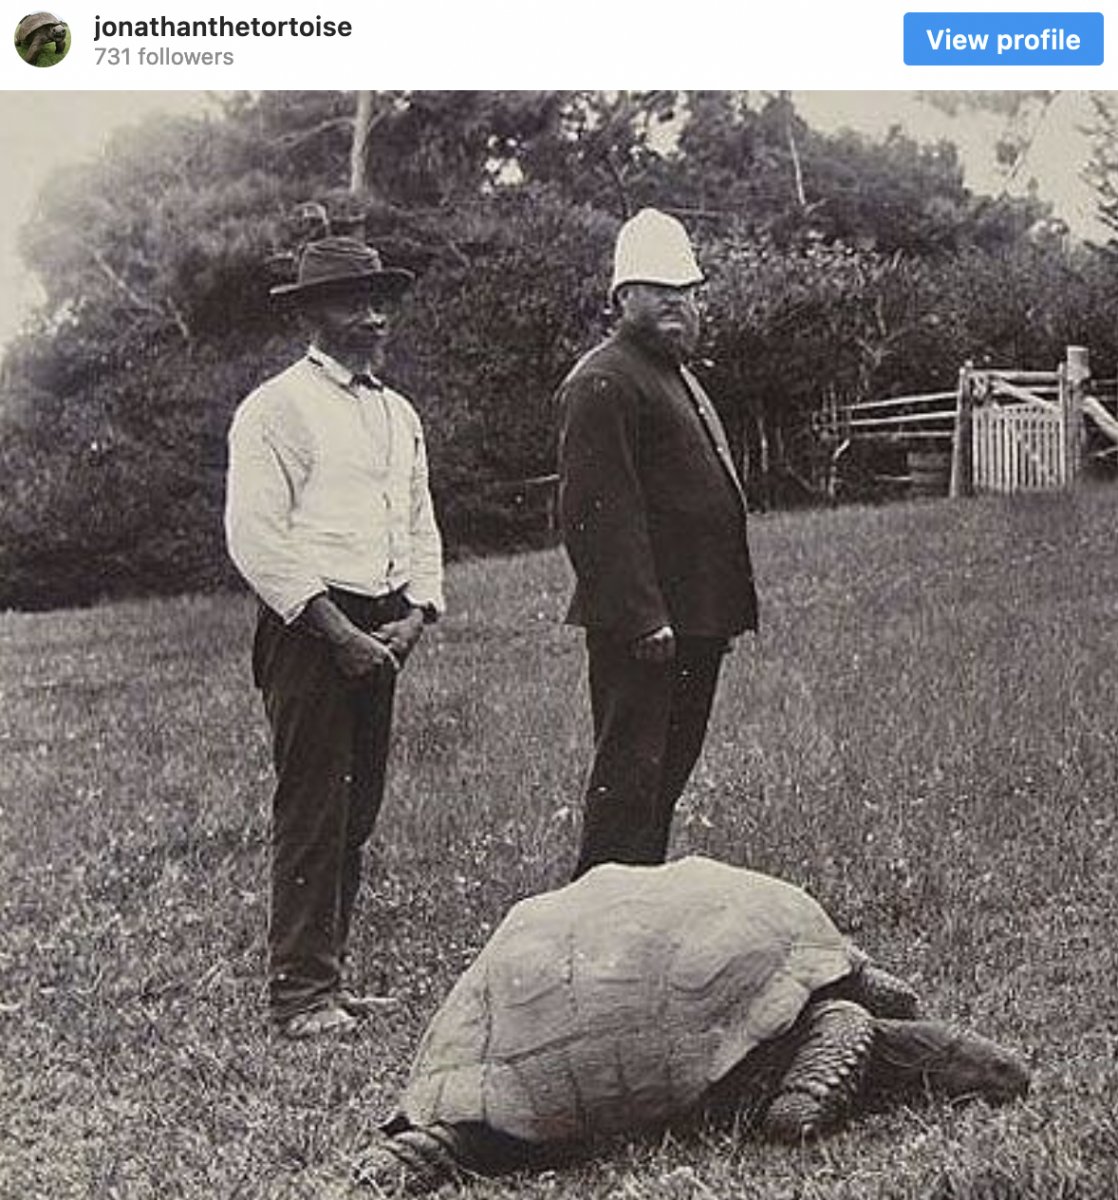 Dünyanın en yaşlı kaplumbağası: Jonathan #2